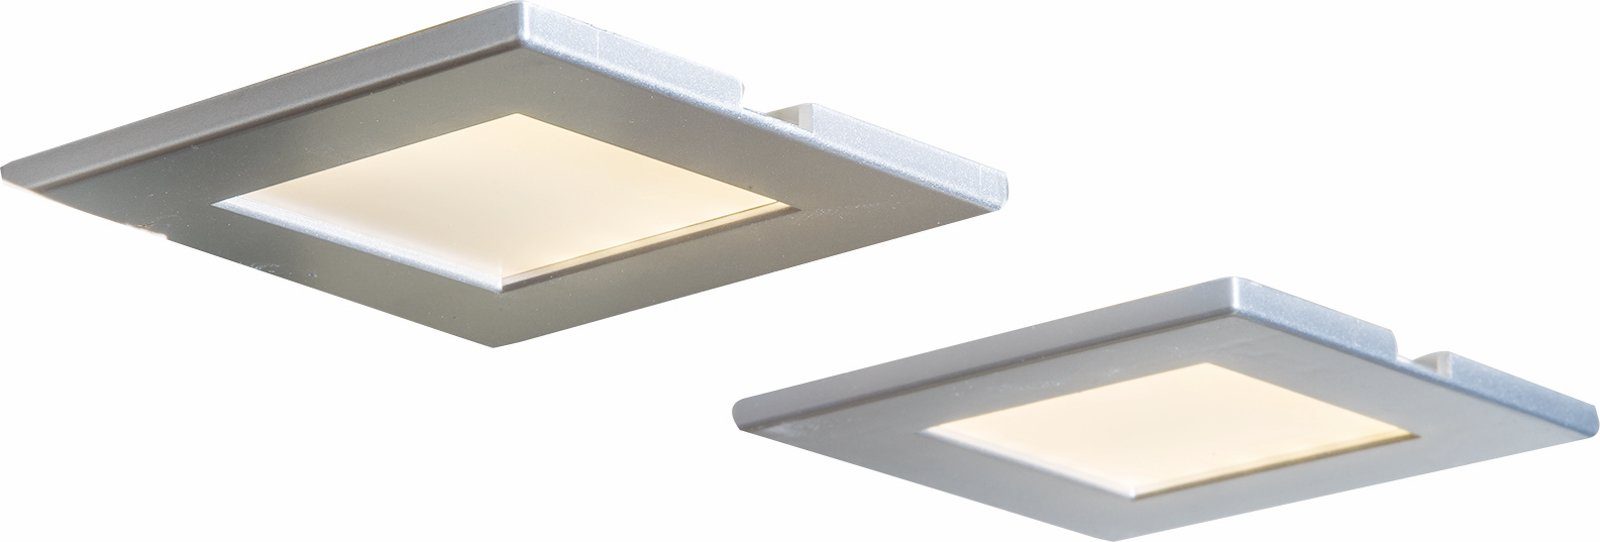 Einbau Deckenstrahler bmf-versand Unterbauleuchte Deckenleuchte LED Deckenleuchte Nino Leuchten